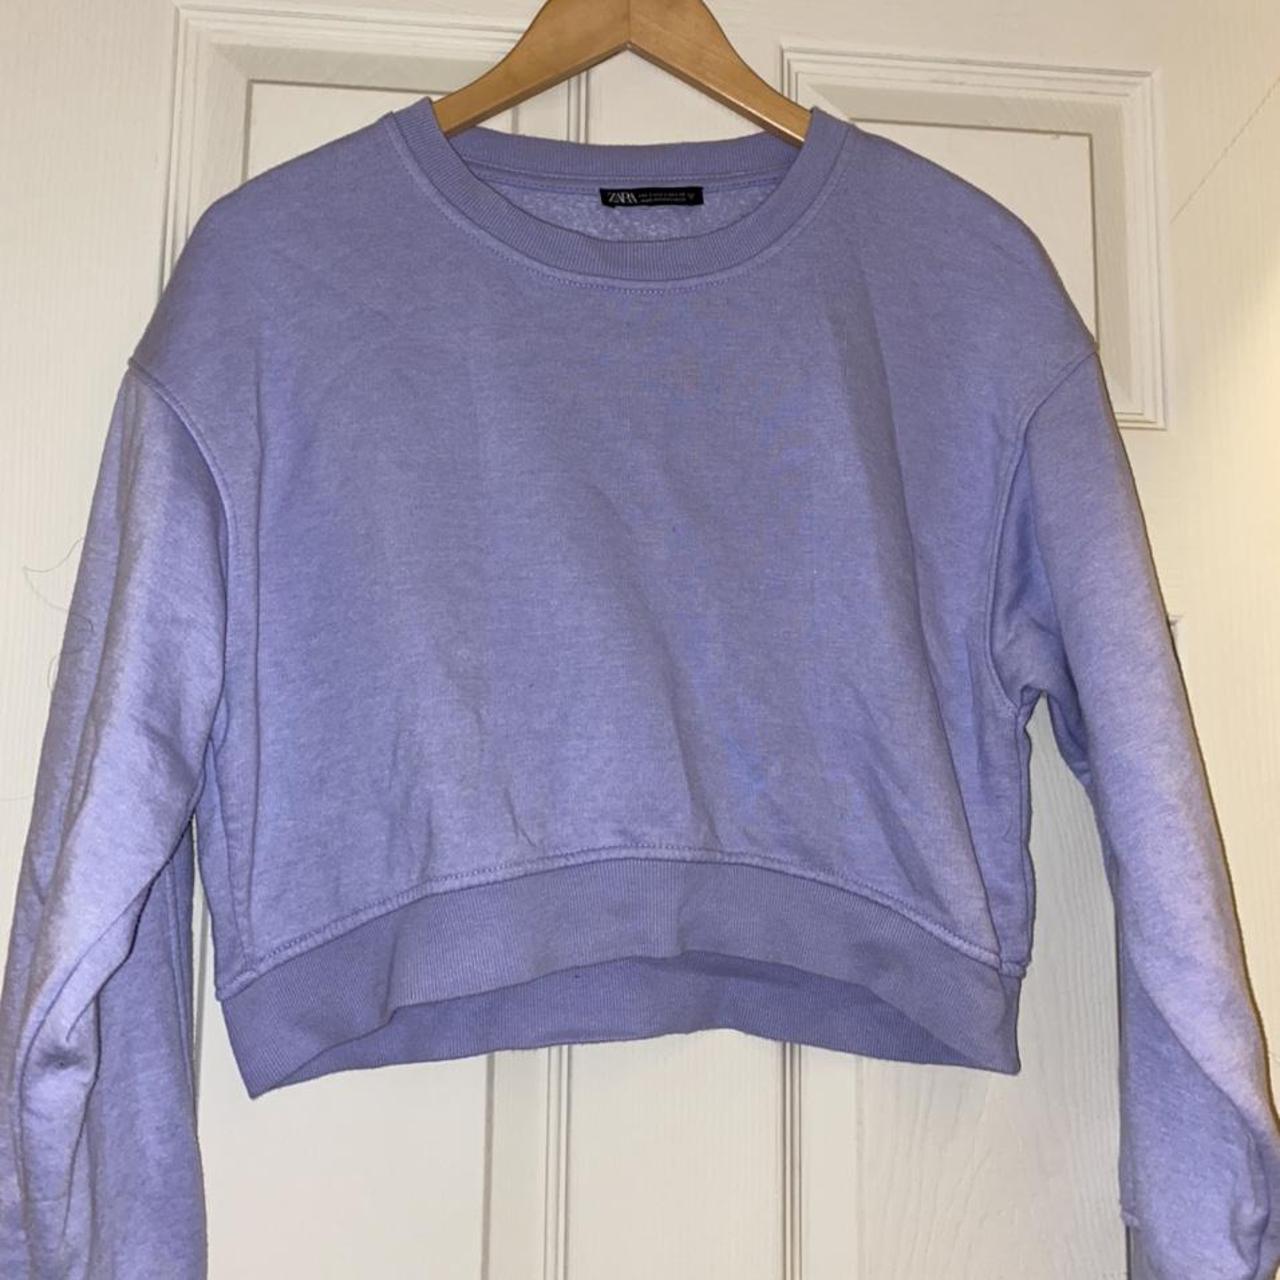 Zara cropped blue/purple colour sweatshirt for... - Depop